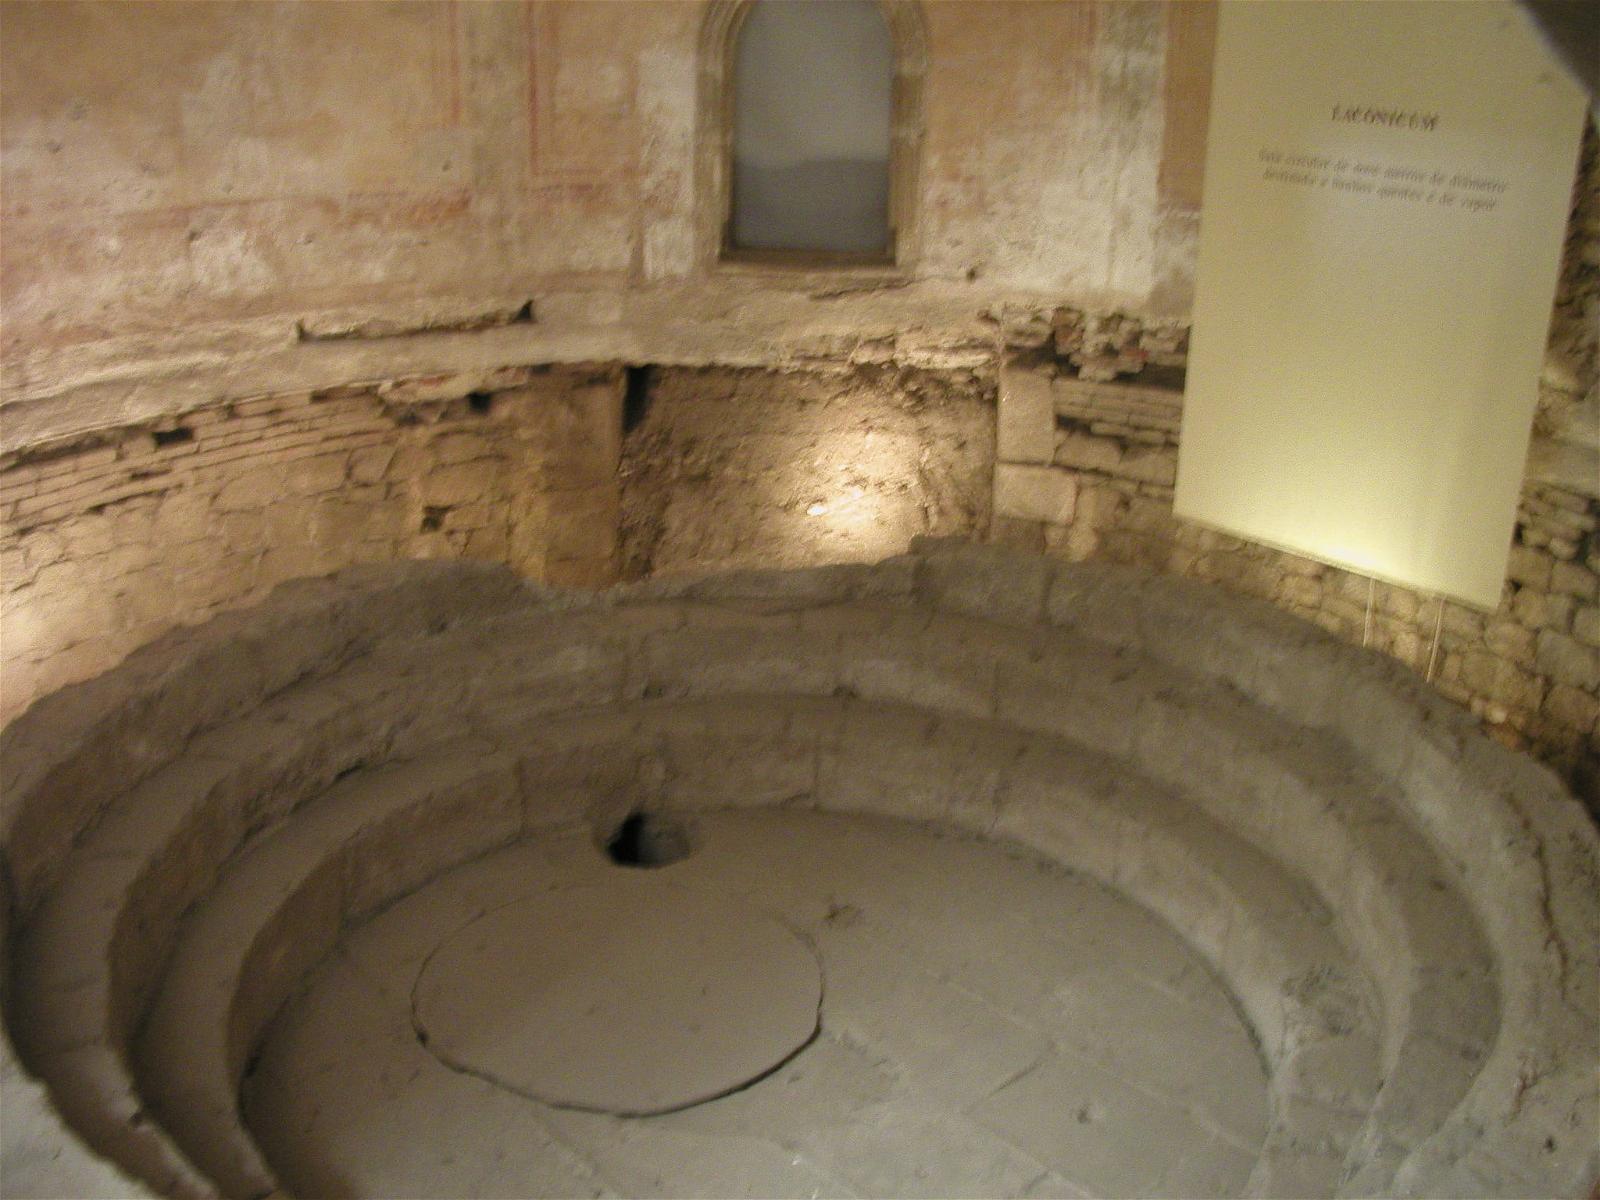 Roman Baths の画像. 